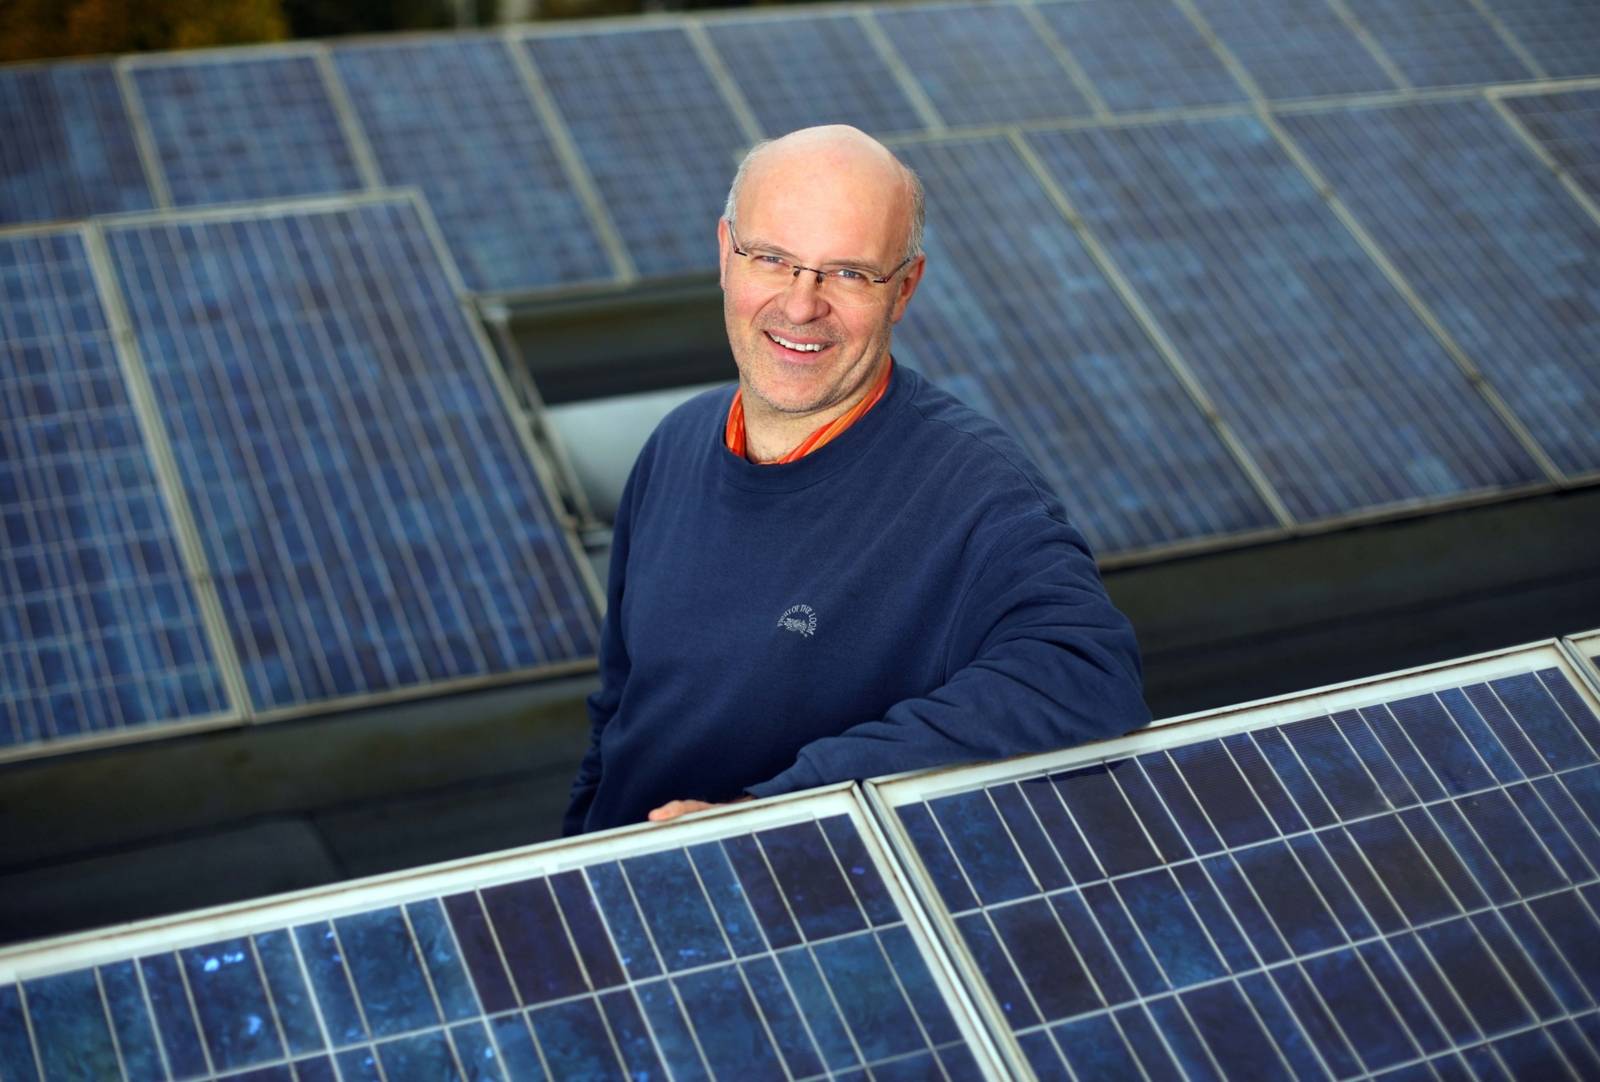 Energieberater Dirk Hufnagel zwischen einer Photovoltaikanlage